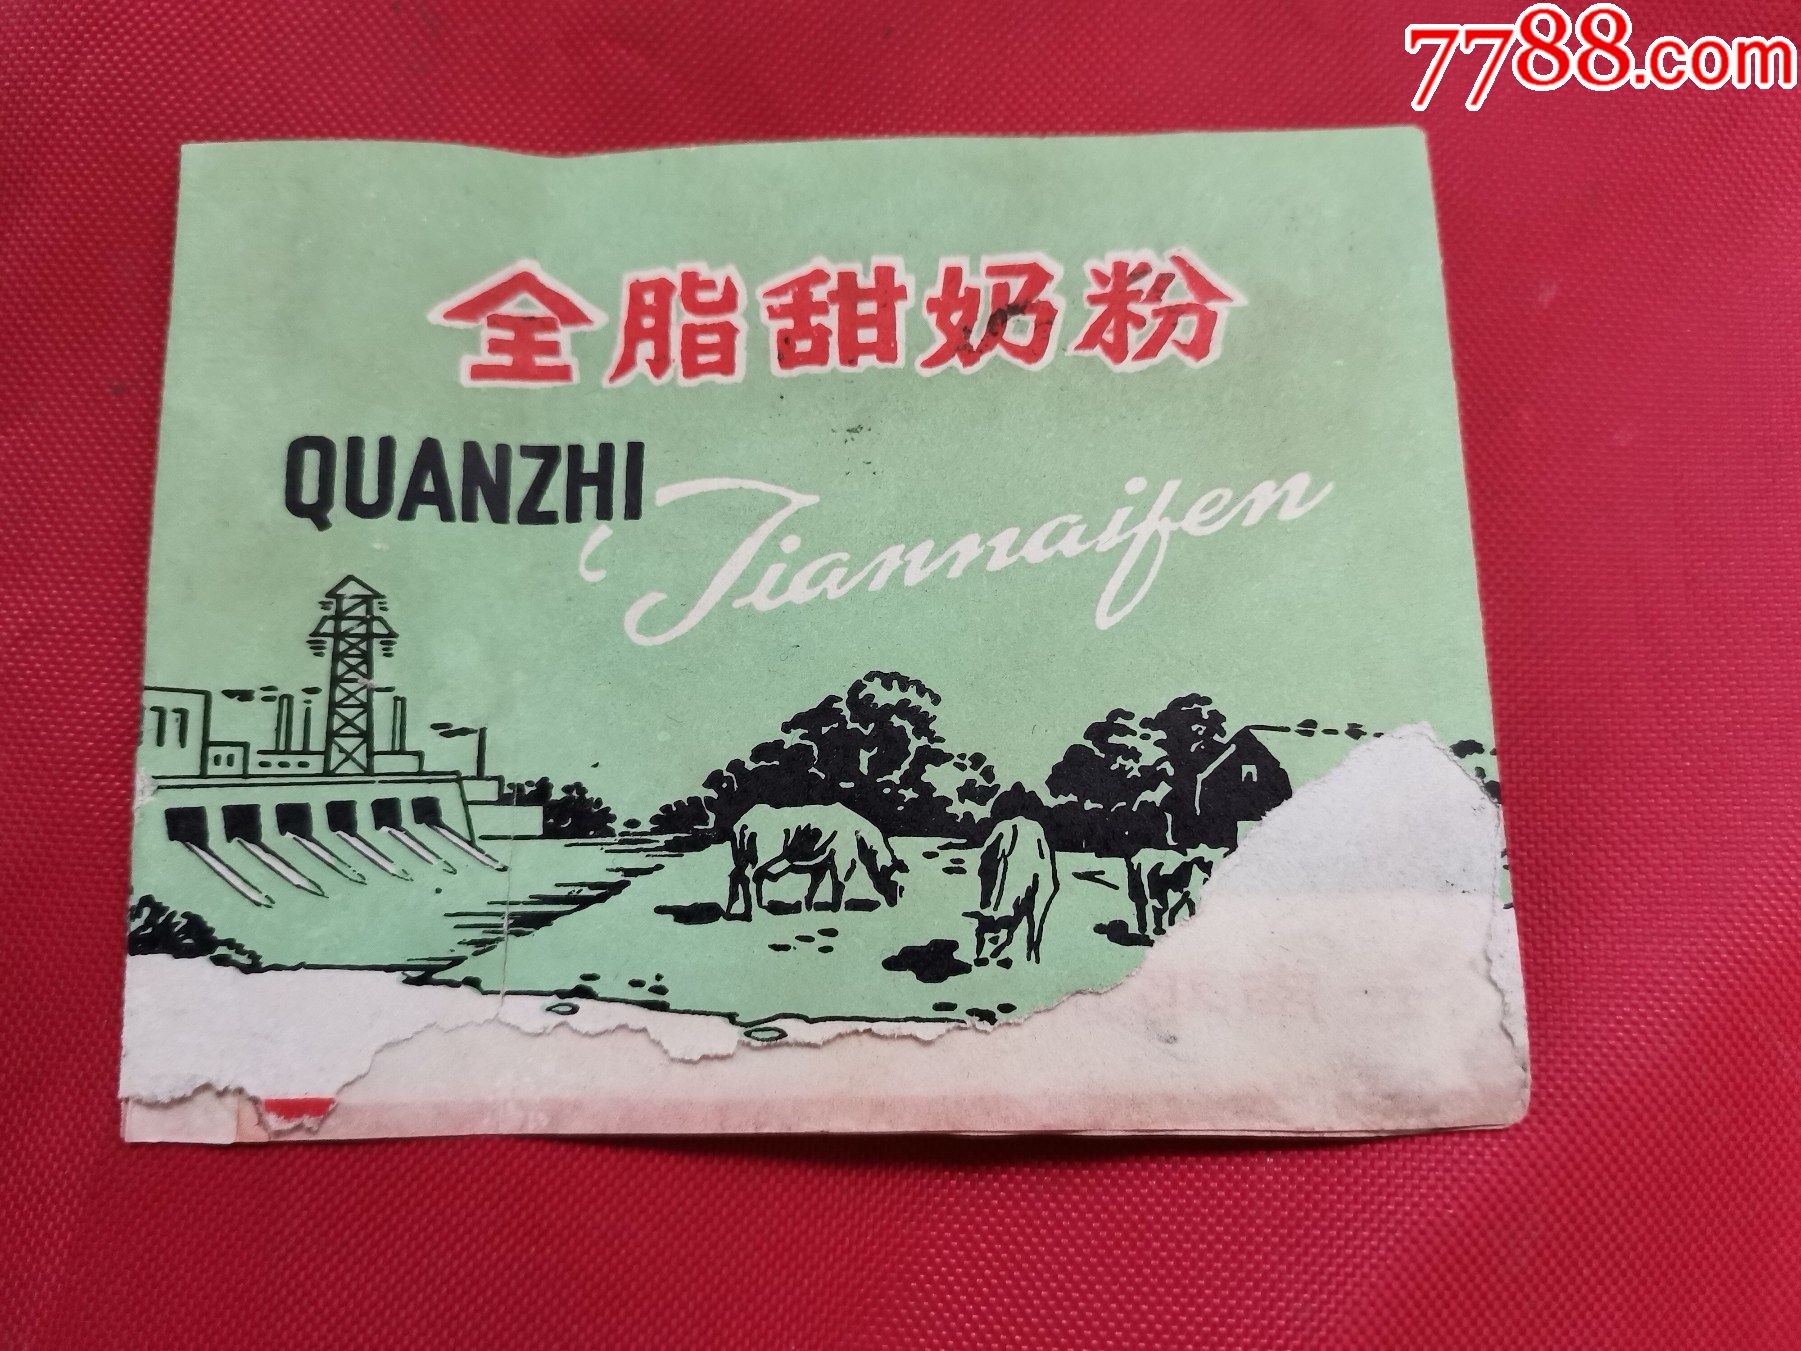 文革红旗牌全脂甜奶粉商标(云南邓川奶粉厂,有语录)